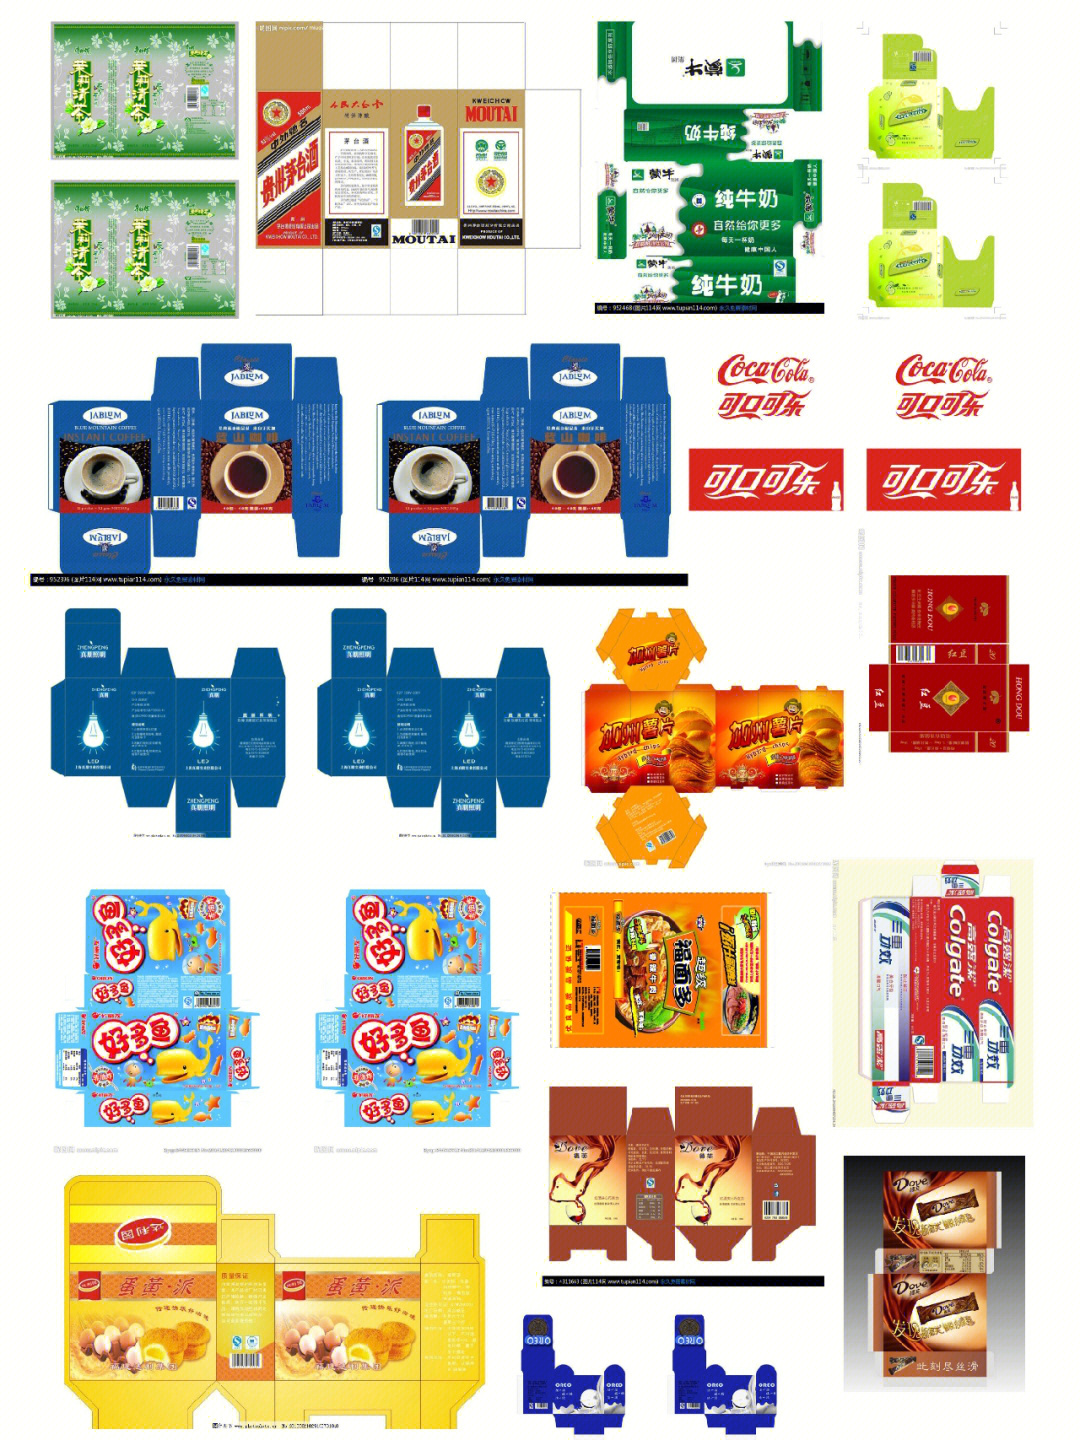 微缩图纸分享 超级可爱有国产零食包装  日韩小零食包装日用品包装